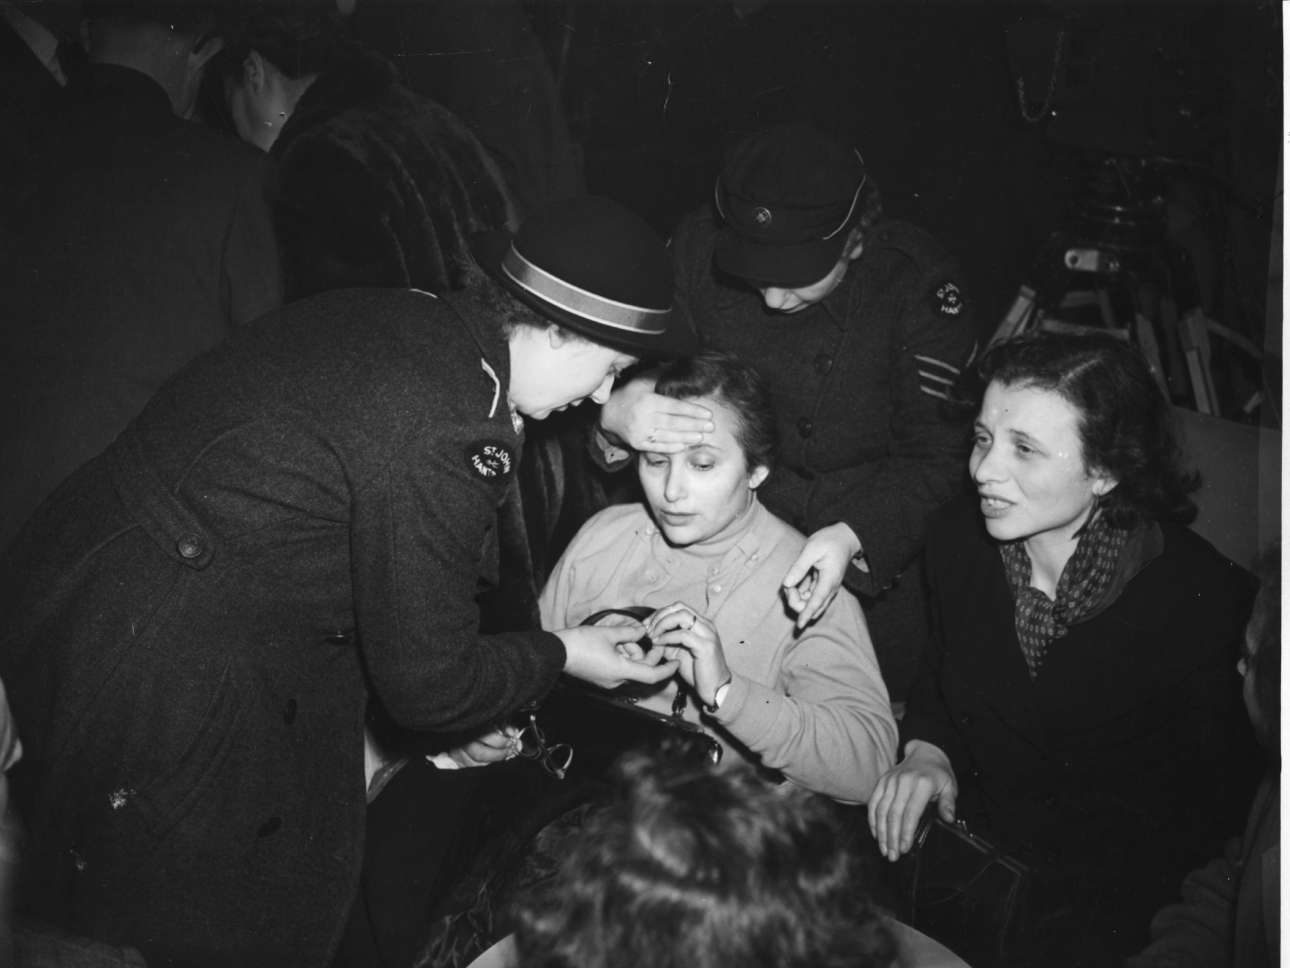 Νοέμβριος 1956. Μια Ουγγαρέζα λαμβάνει τις πρώτες βοήθειες κατά την άφιξή της στο αεροδρόμιο του Χάμσαϊρ στη Βρετανία